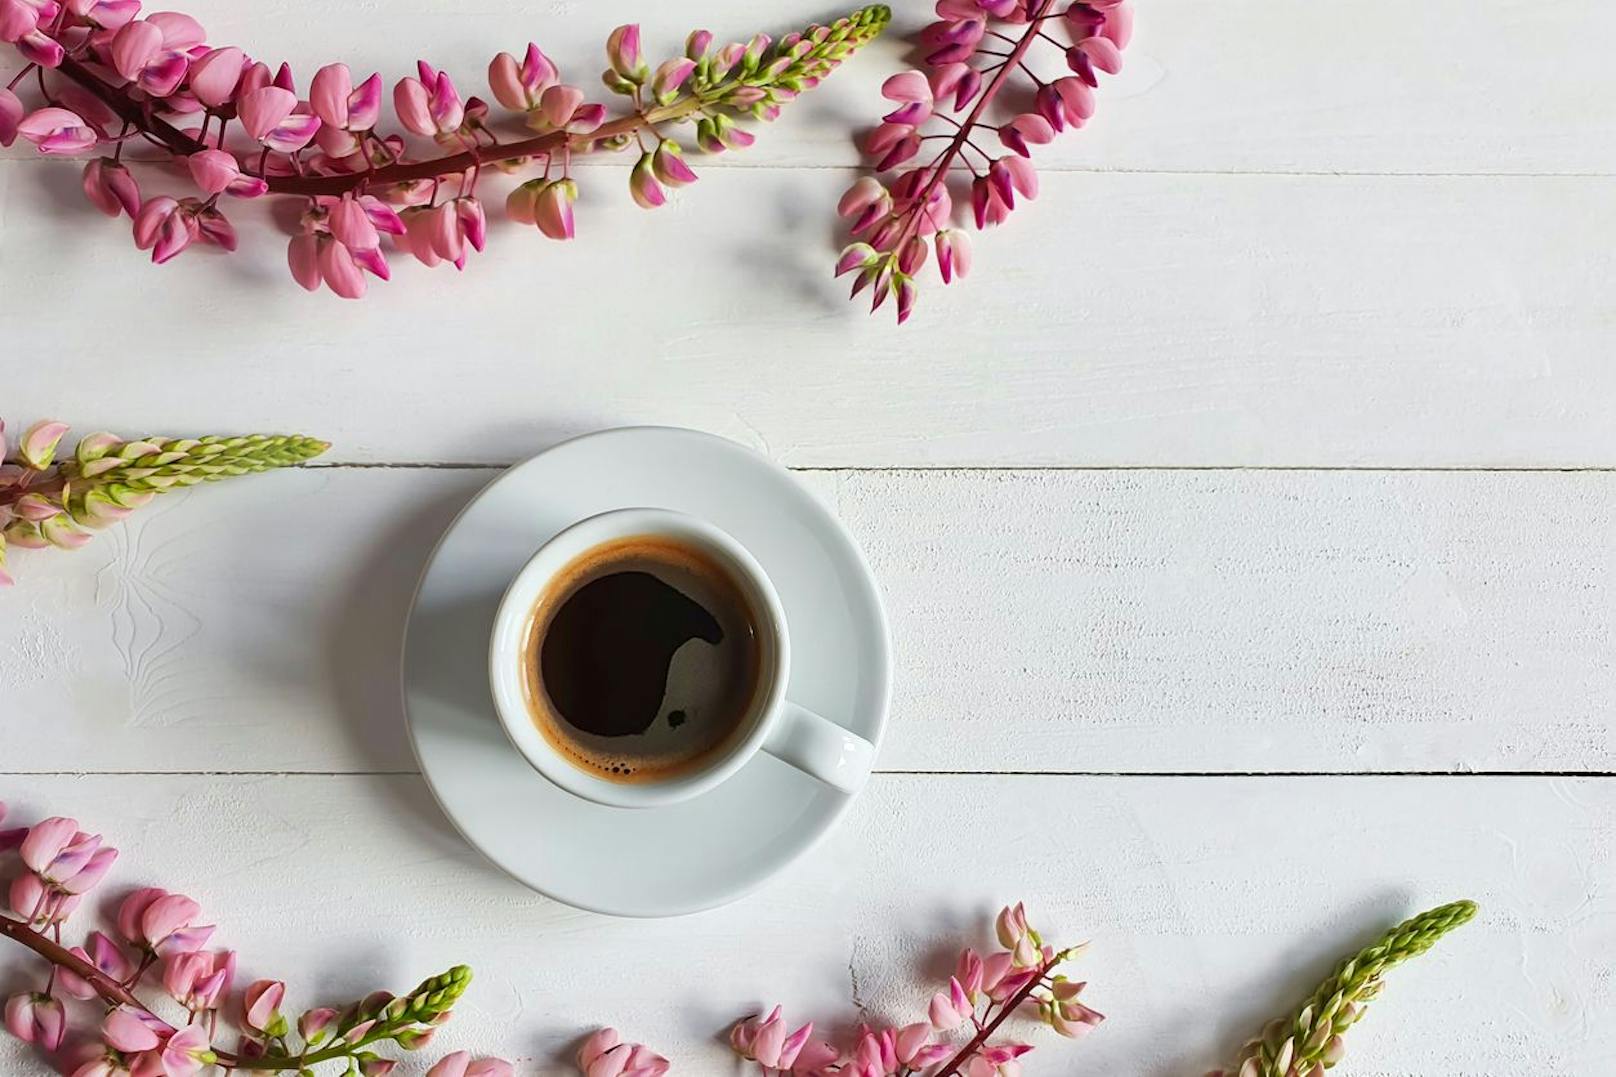 Ein gesunder Kaffee-Ersatz, der nicht auf den eigentlichen Kaffeegeschmack verzichtet, wäre Lupinenkaffee. Dieses trägt ein leckeres Kaffee-Aroma, sowie nahrhafte Vitamine und Spurenelemente.